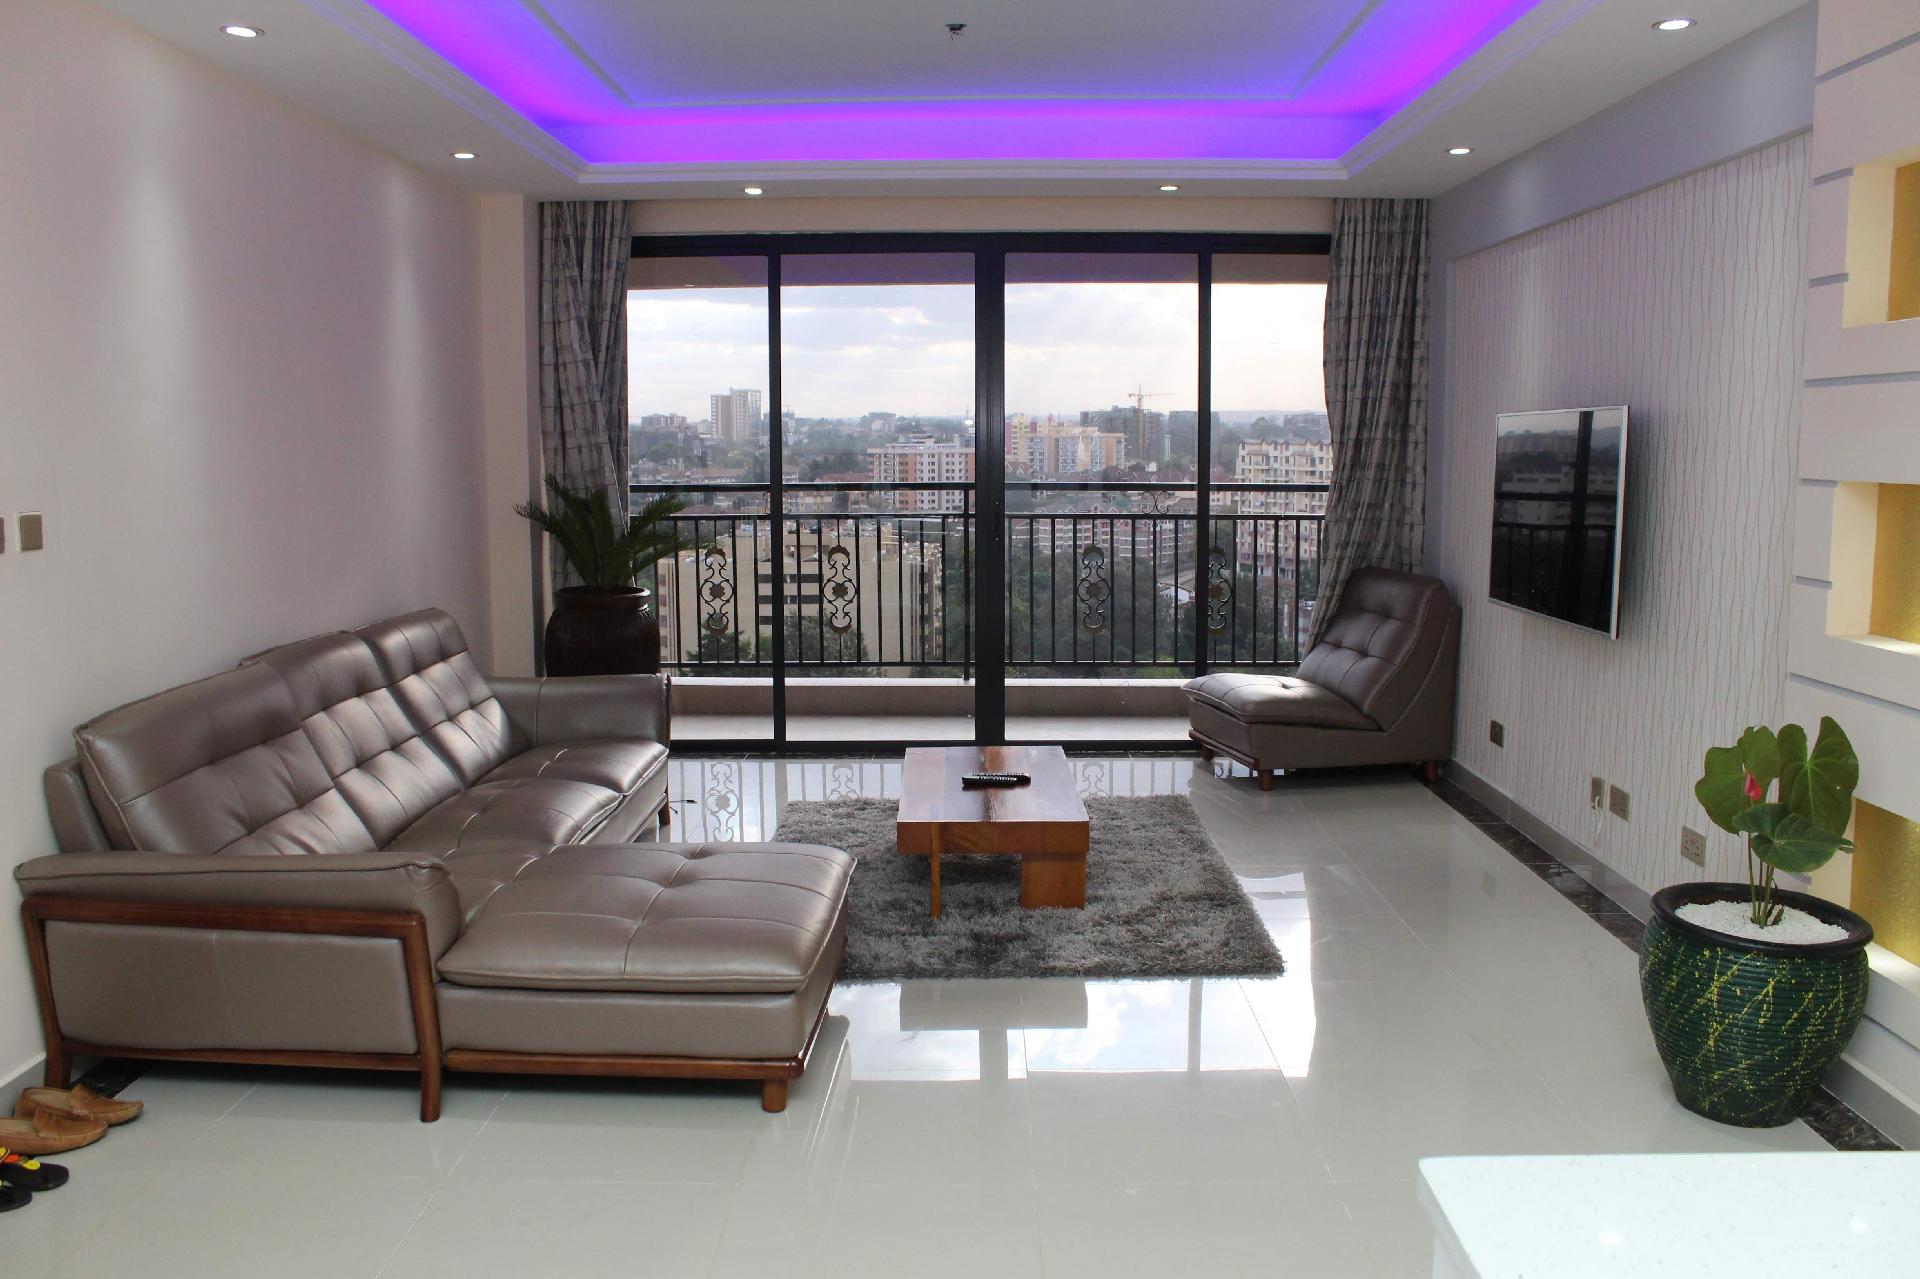 Ferienwohnung für 6 Personen ca. 232 m²  Ferienwohnung in Nairobi